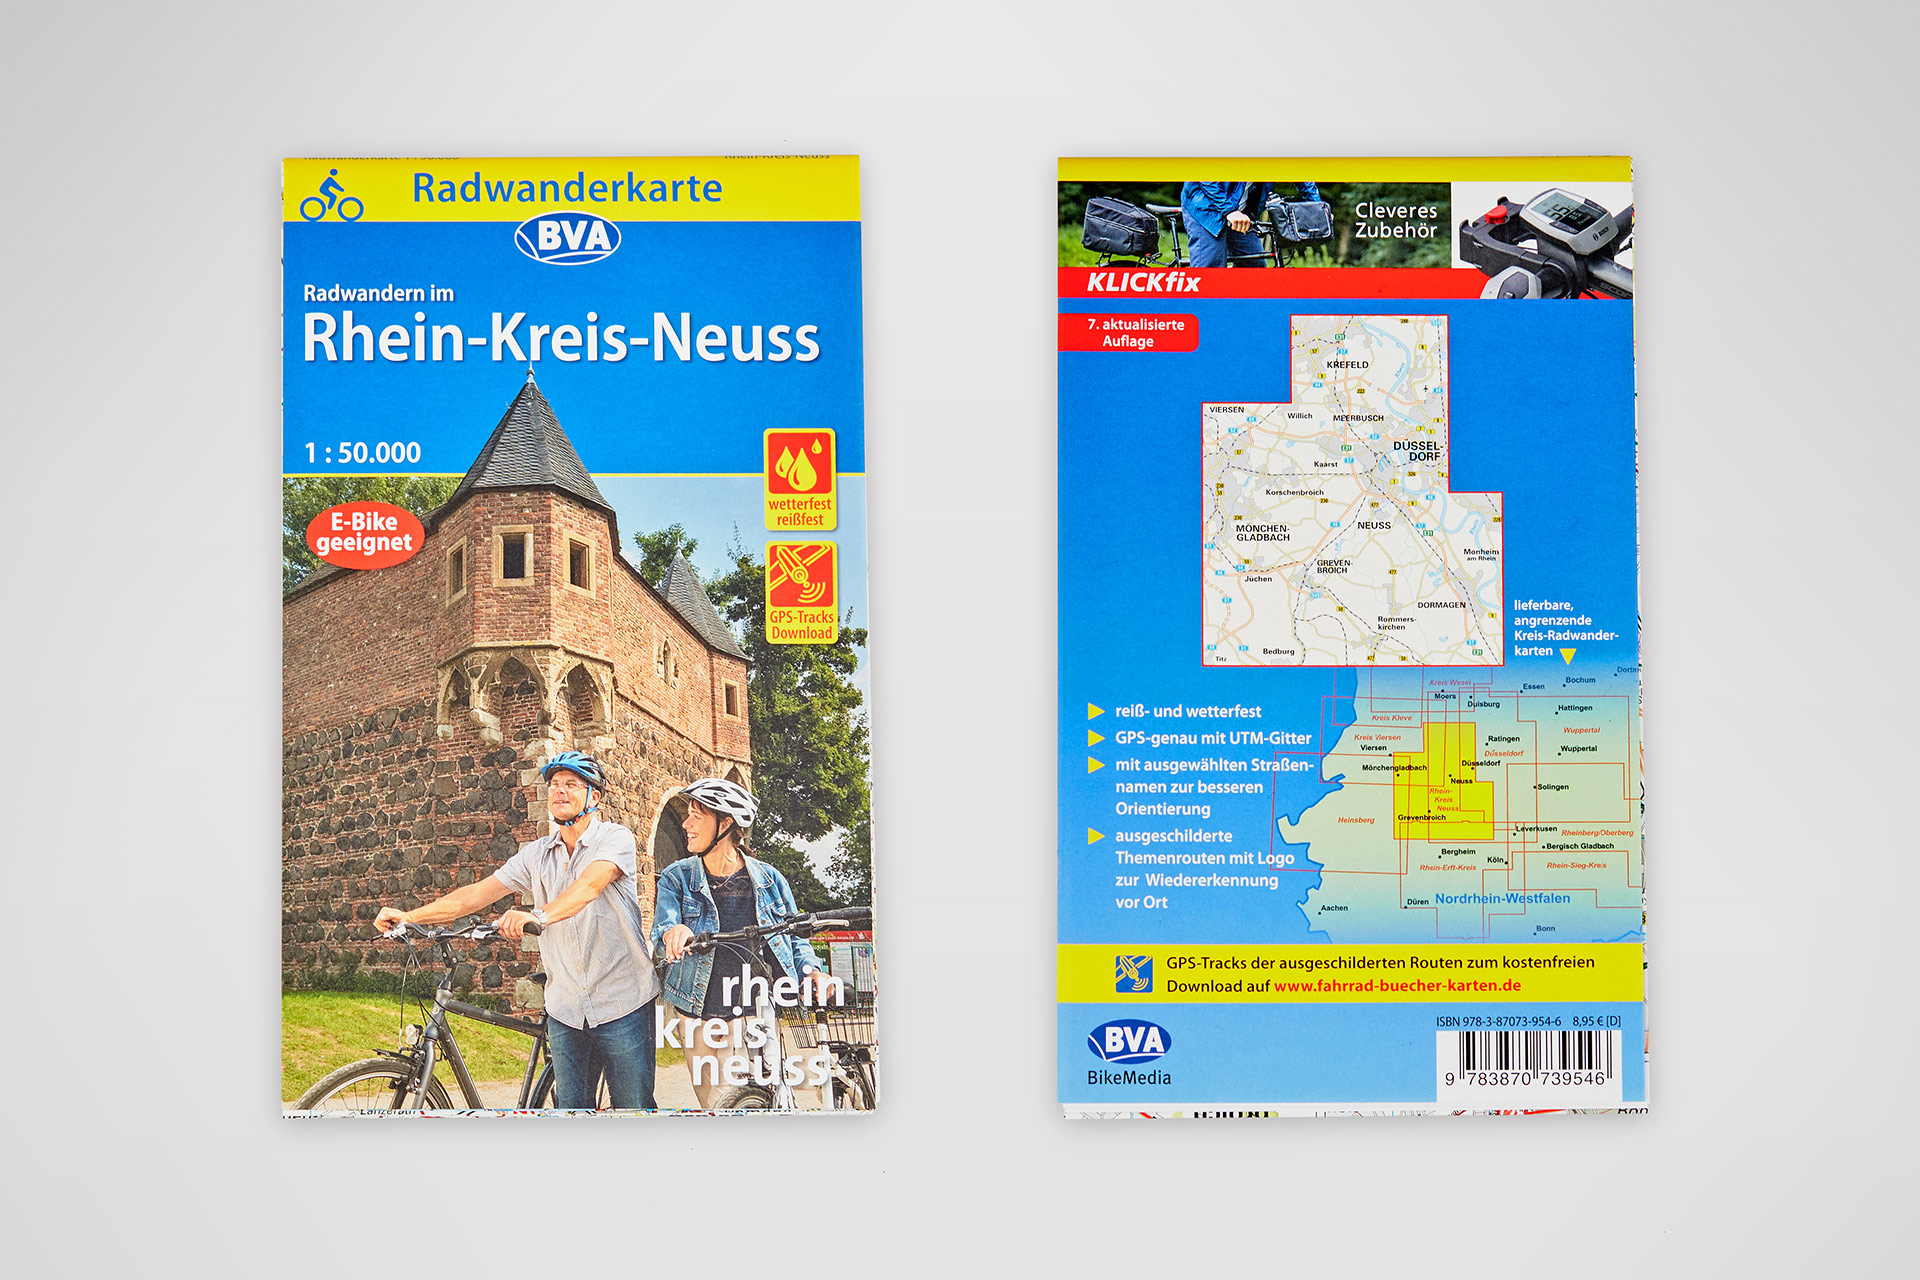 Radwanderkarte „Radwandern im Rhein-Kreis-Neuss“